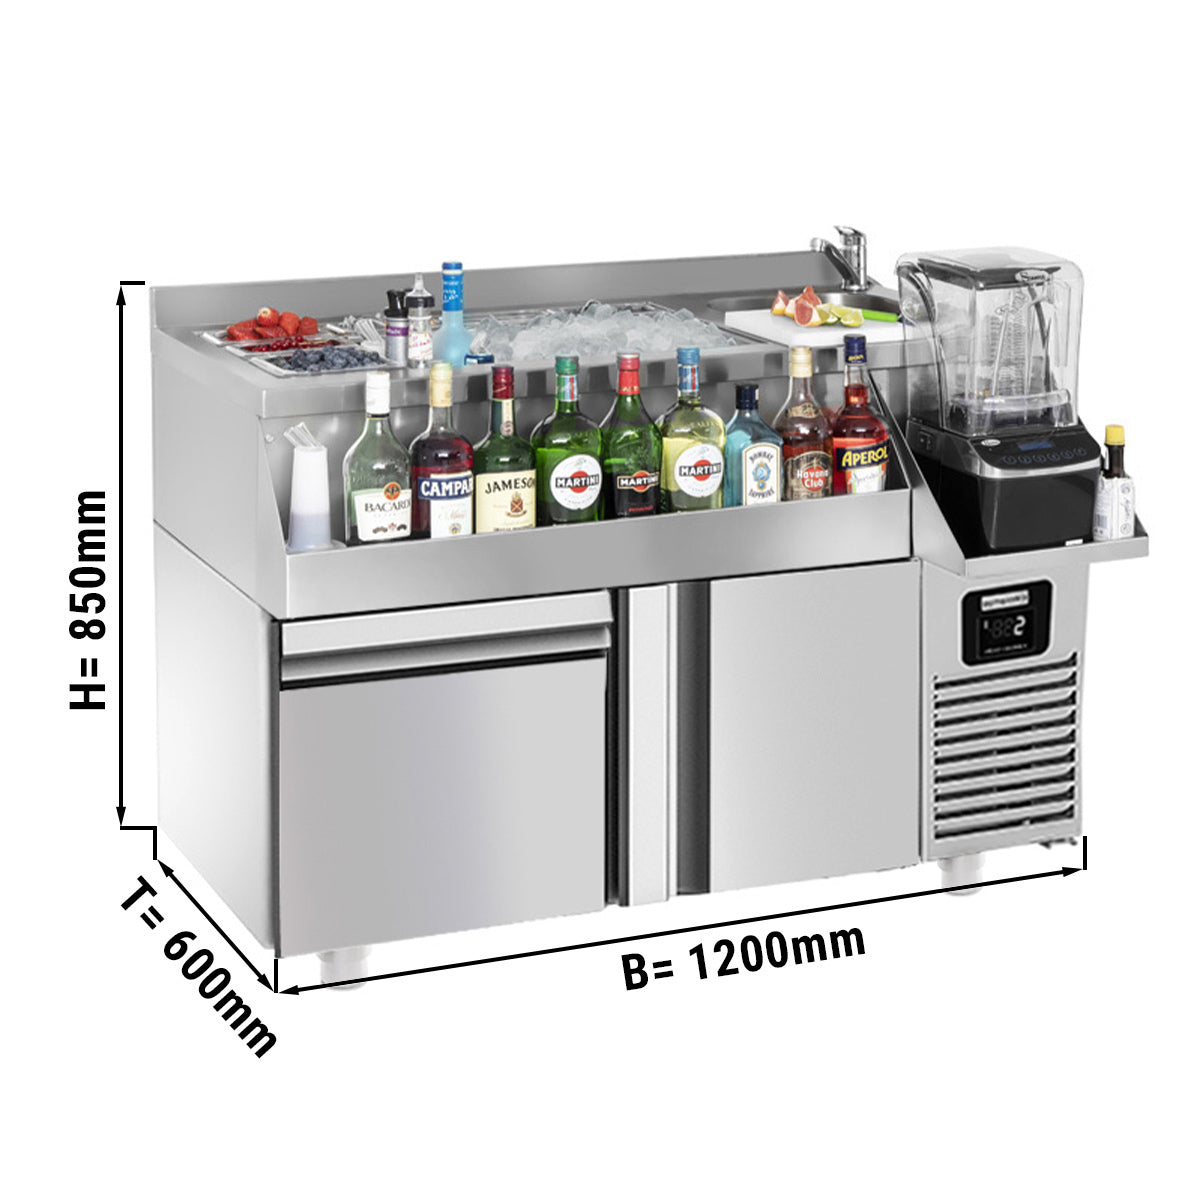 Хладилна маса за бар / напитки - 1,2 x 0,6 m - 150 литра - с 1 врата, 1 чекмедже 1/1 и рафтове